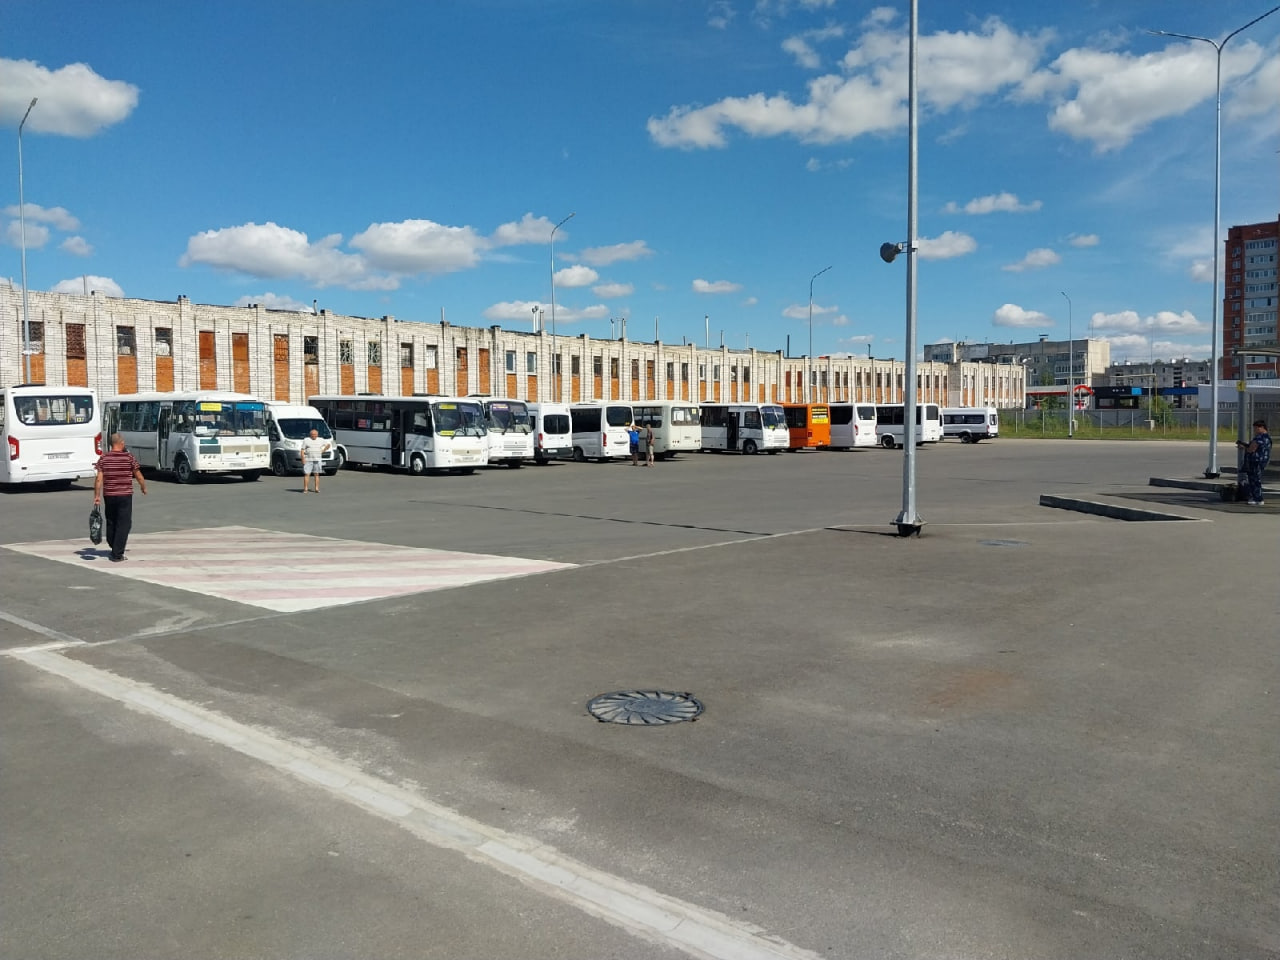 Едем в отпуск на автобусе: пять направлений из Йошкар-Олы от 1500 рублей